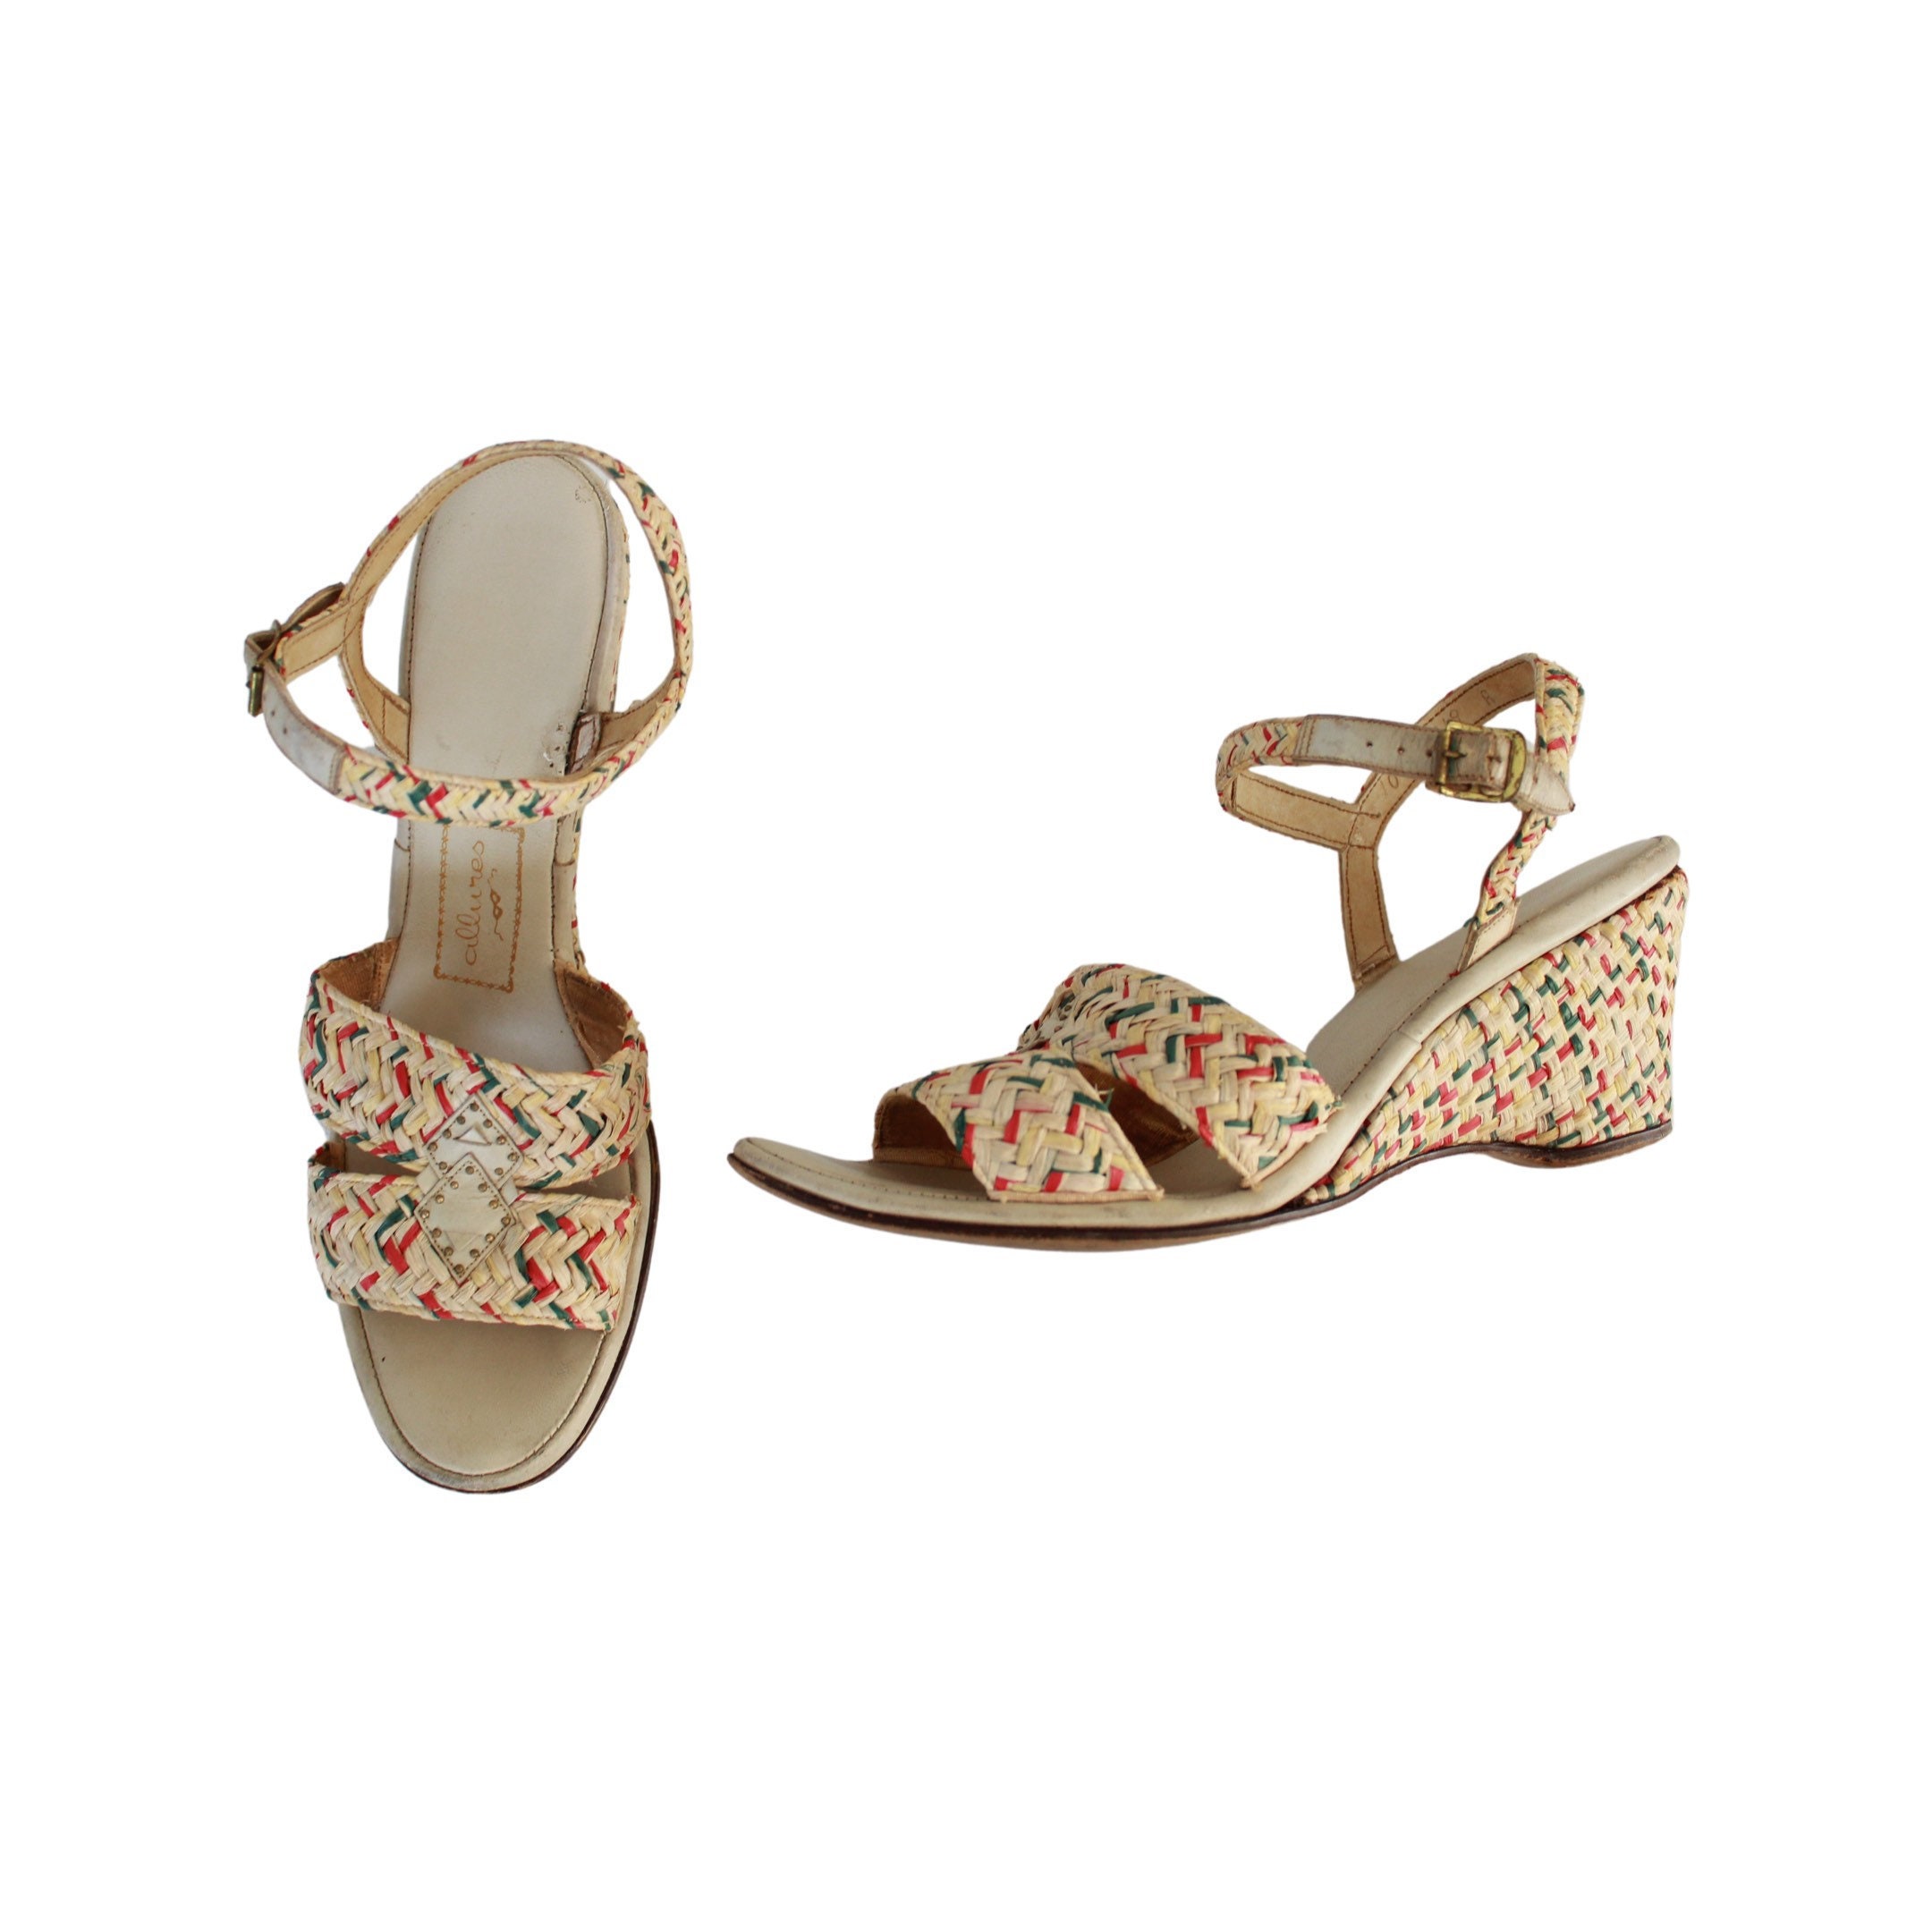 Schoenen damesschoenen Sandalen Espadrilles & Sleehakken Vintage jaren 1940 Wedge Sandalen 40s nieuwigheid print schoenen Maat 6.5 tot 7 